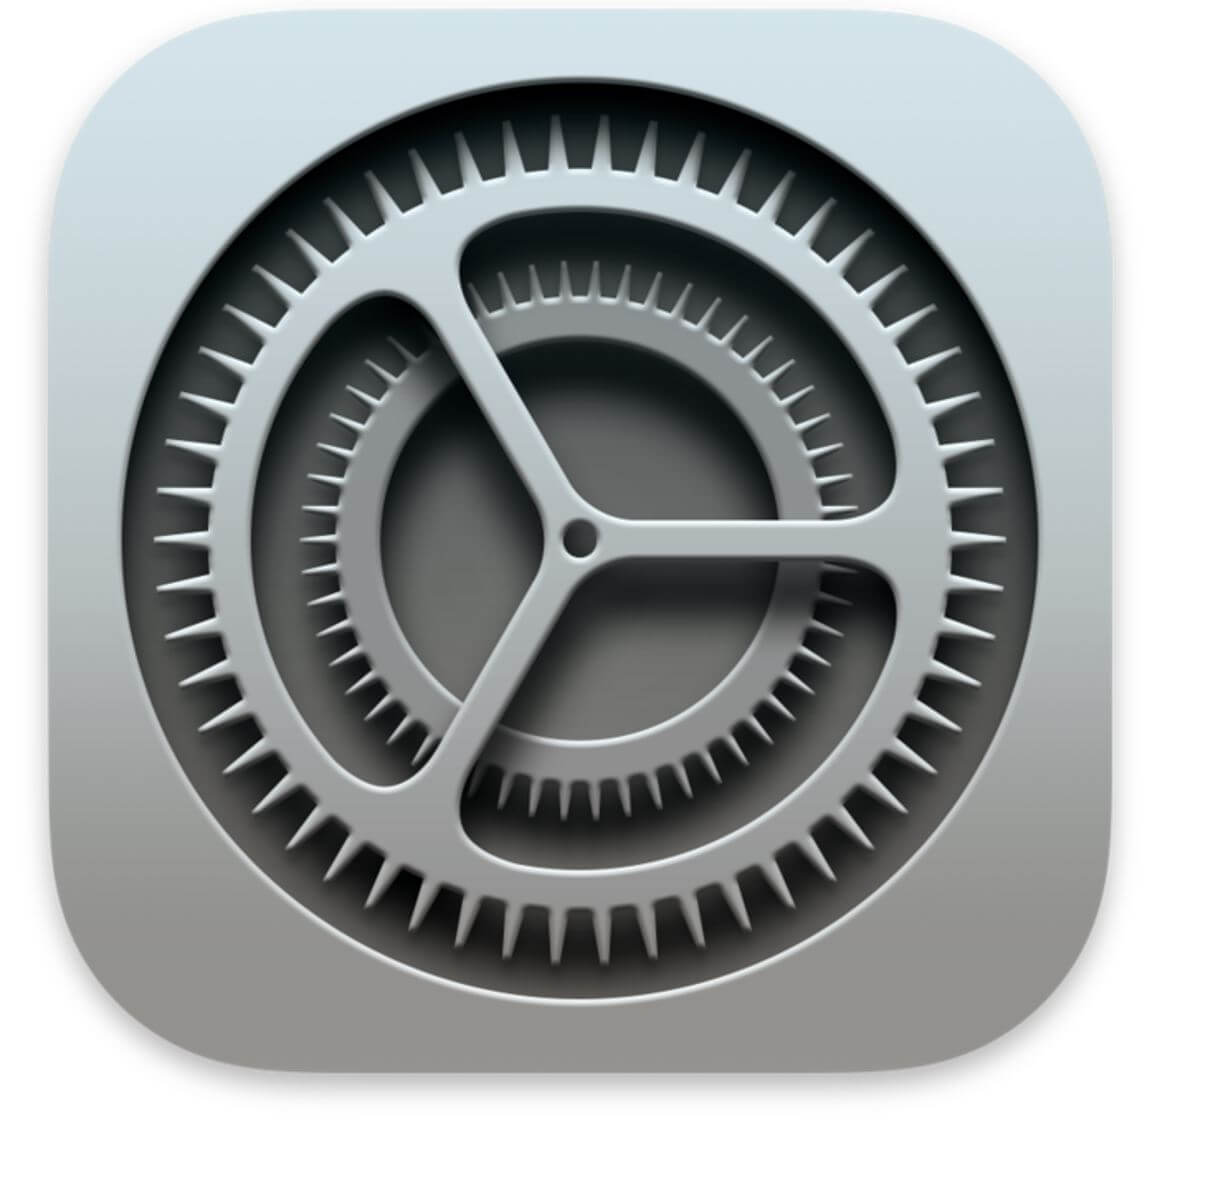 L'icône de l'application Réglages sur un iPad est un carré gris avec un engrenage mécanique au centre.
